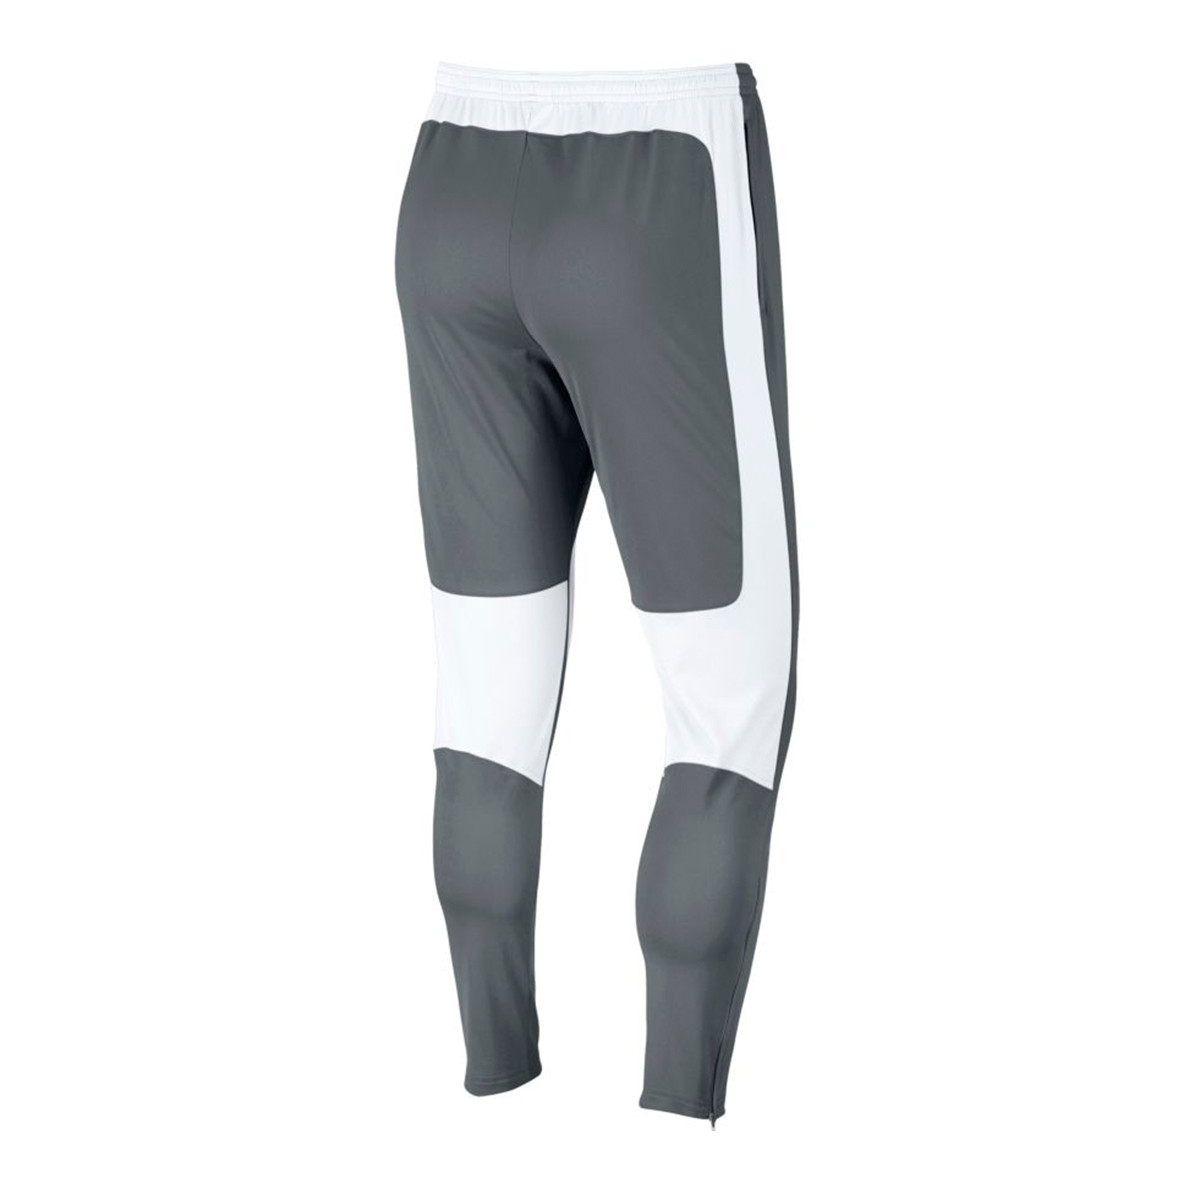 pants Nike Dry Academy KPZ Cool grey 